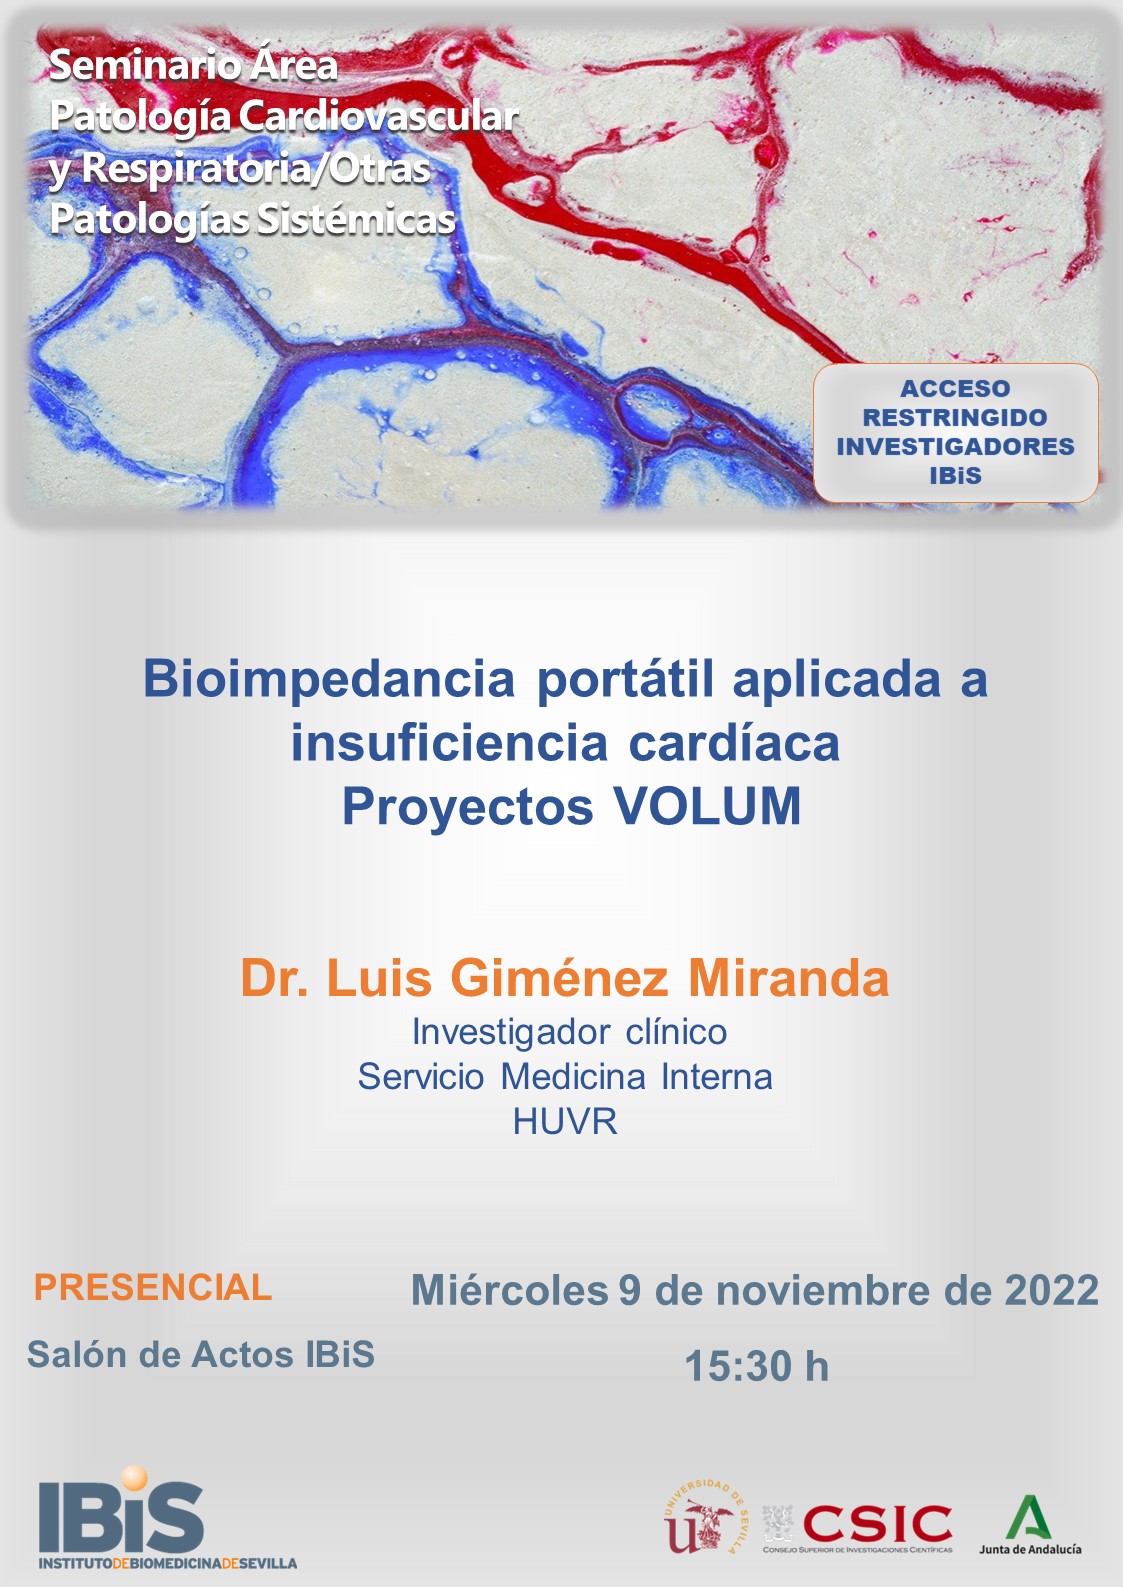 Poster: Bioimpedancia portátil aplicada a insuficiencia cardíaca Proyectos VOLUM